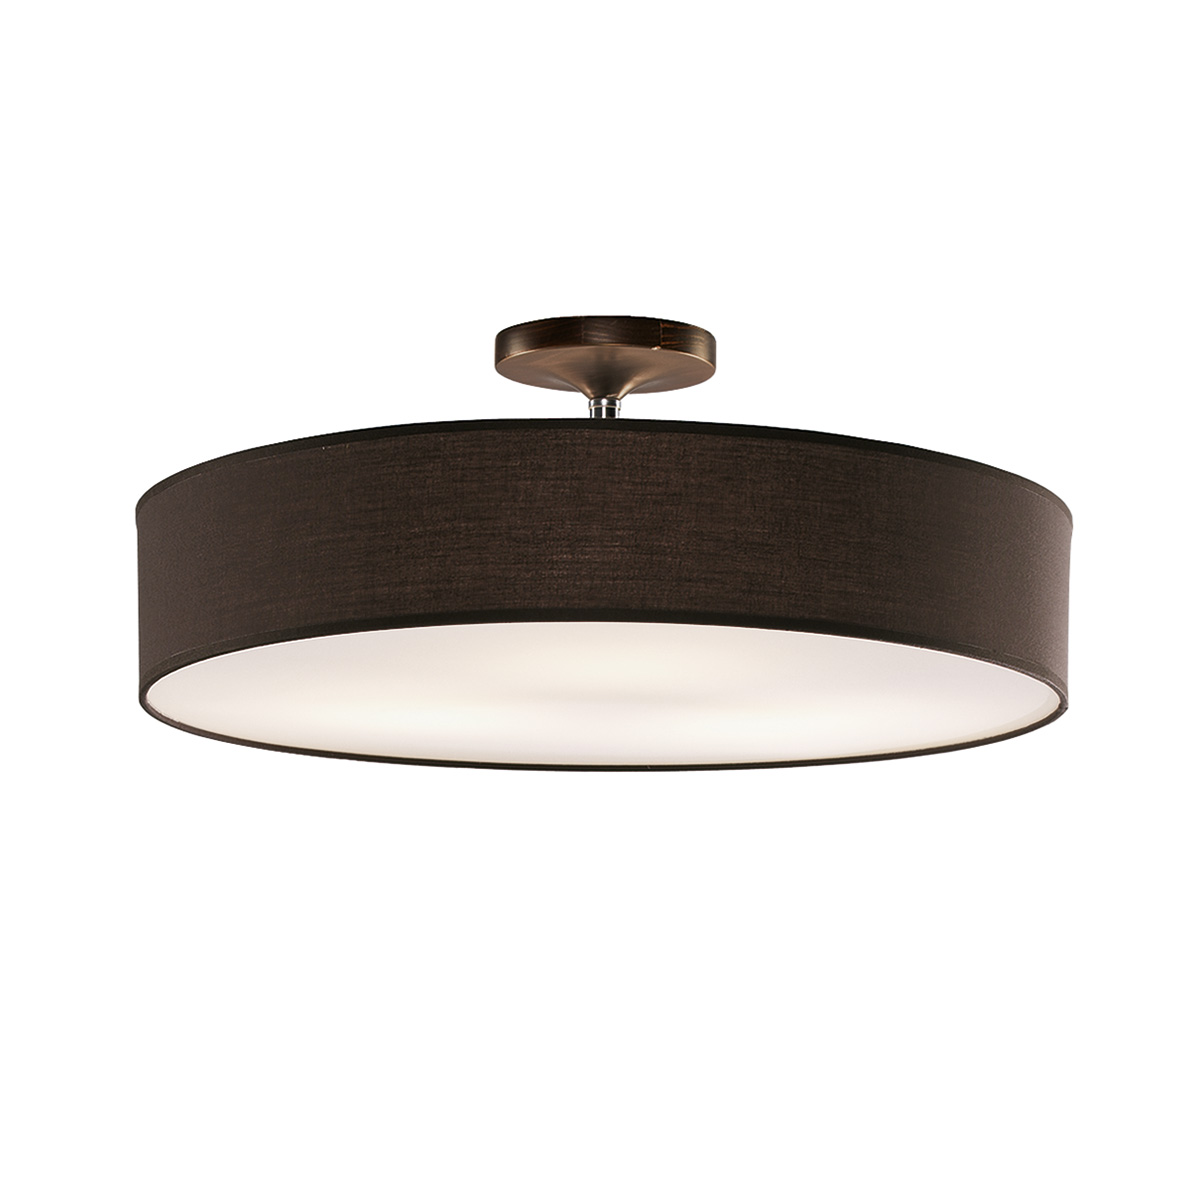 Φωτιστικό ημιοροφής με ανθρακί καπέλο DISCO ZEN ceiling lamp with dark grey shade